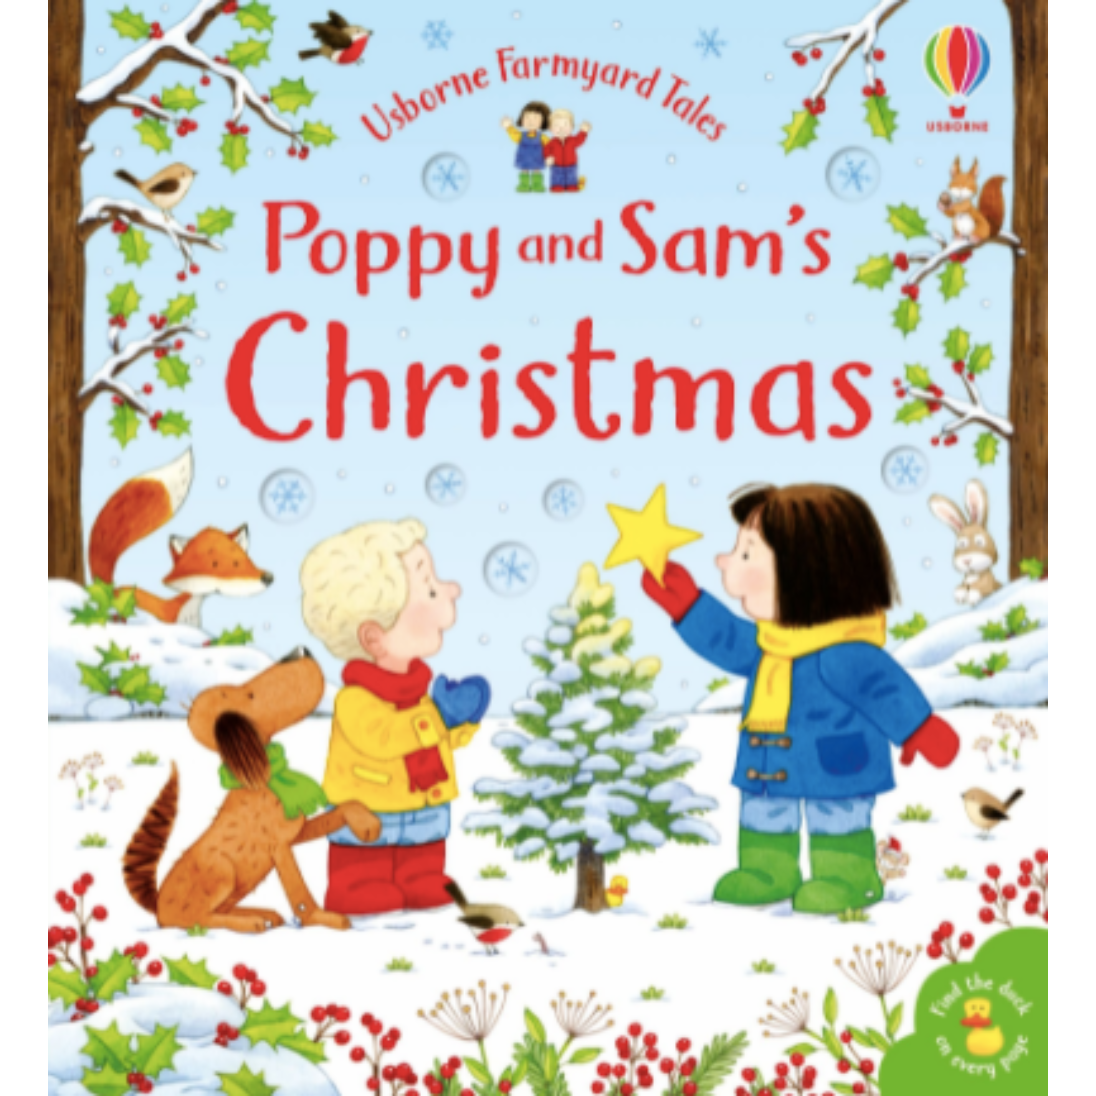 Poppy & Sam’s Christmas by Usborne